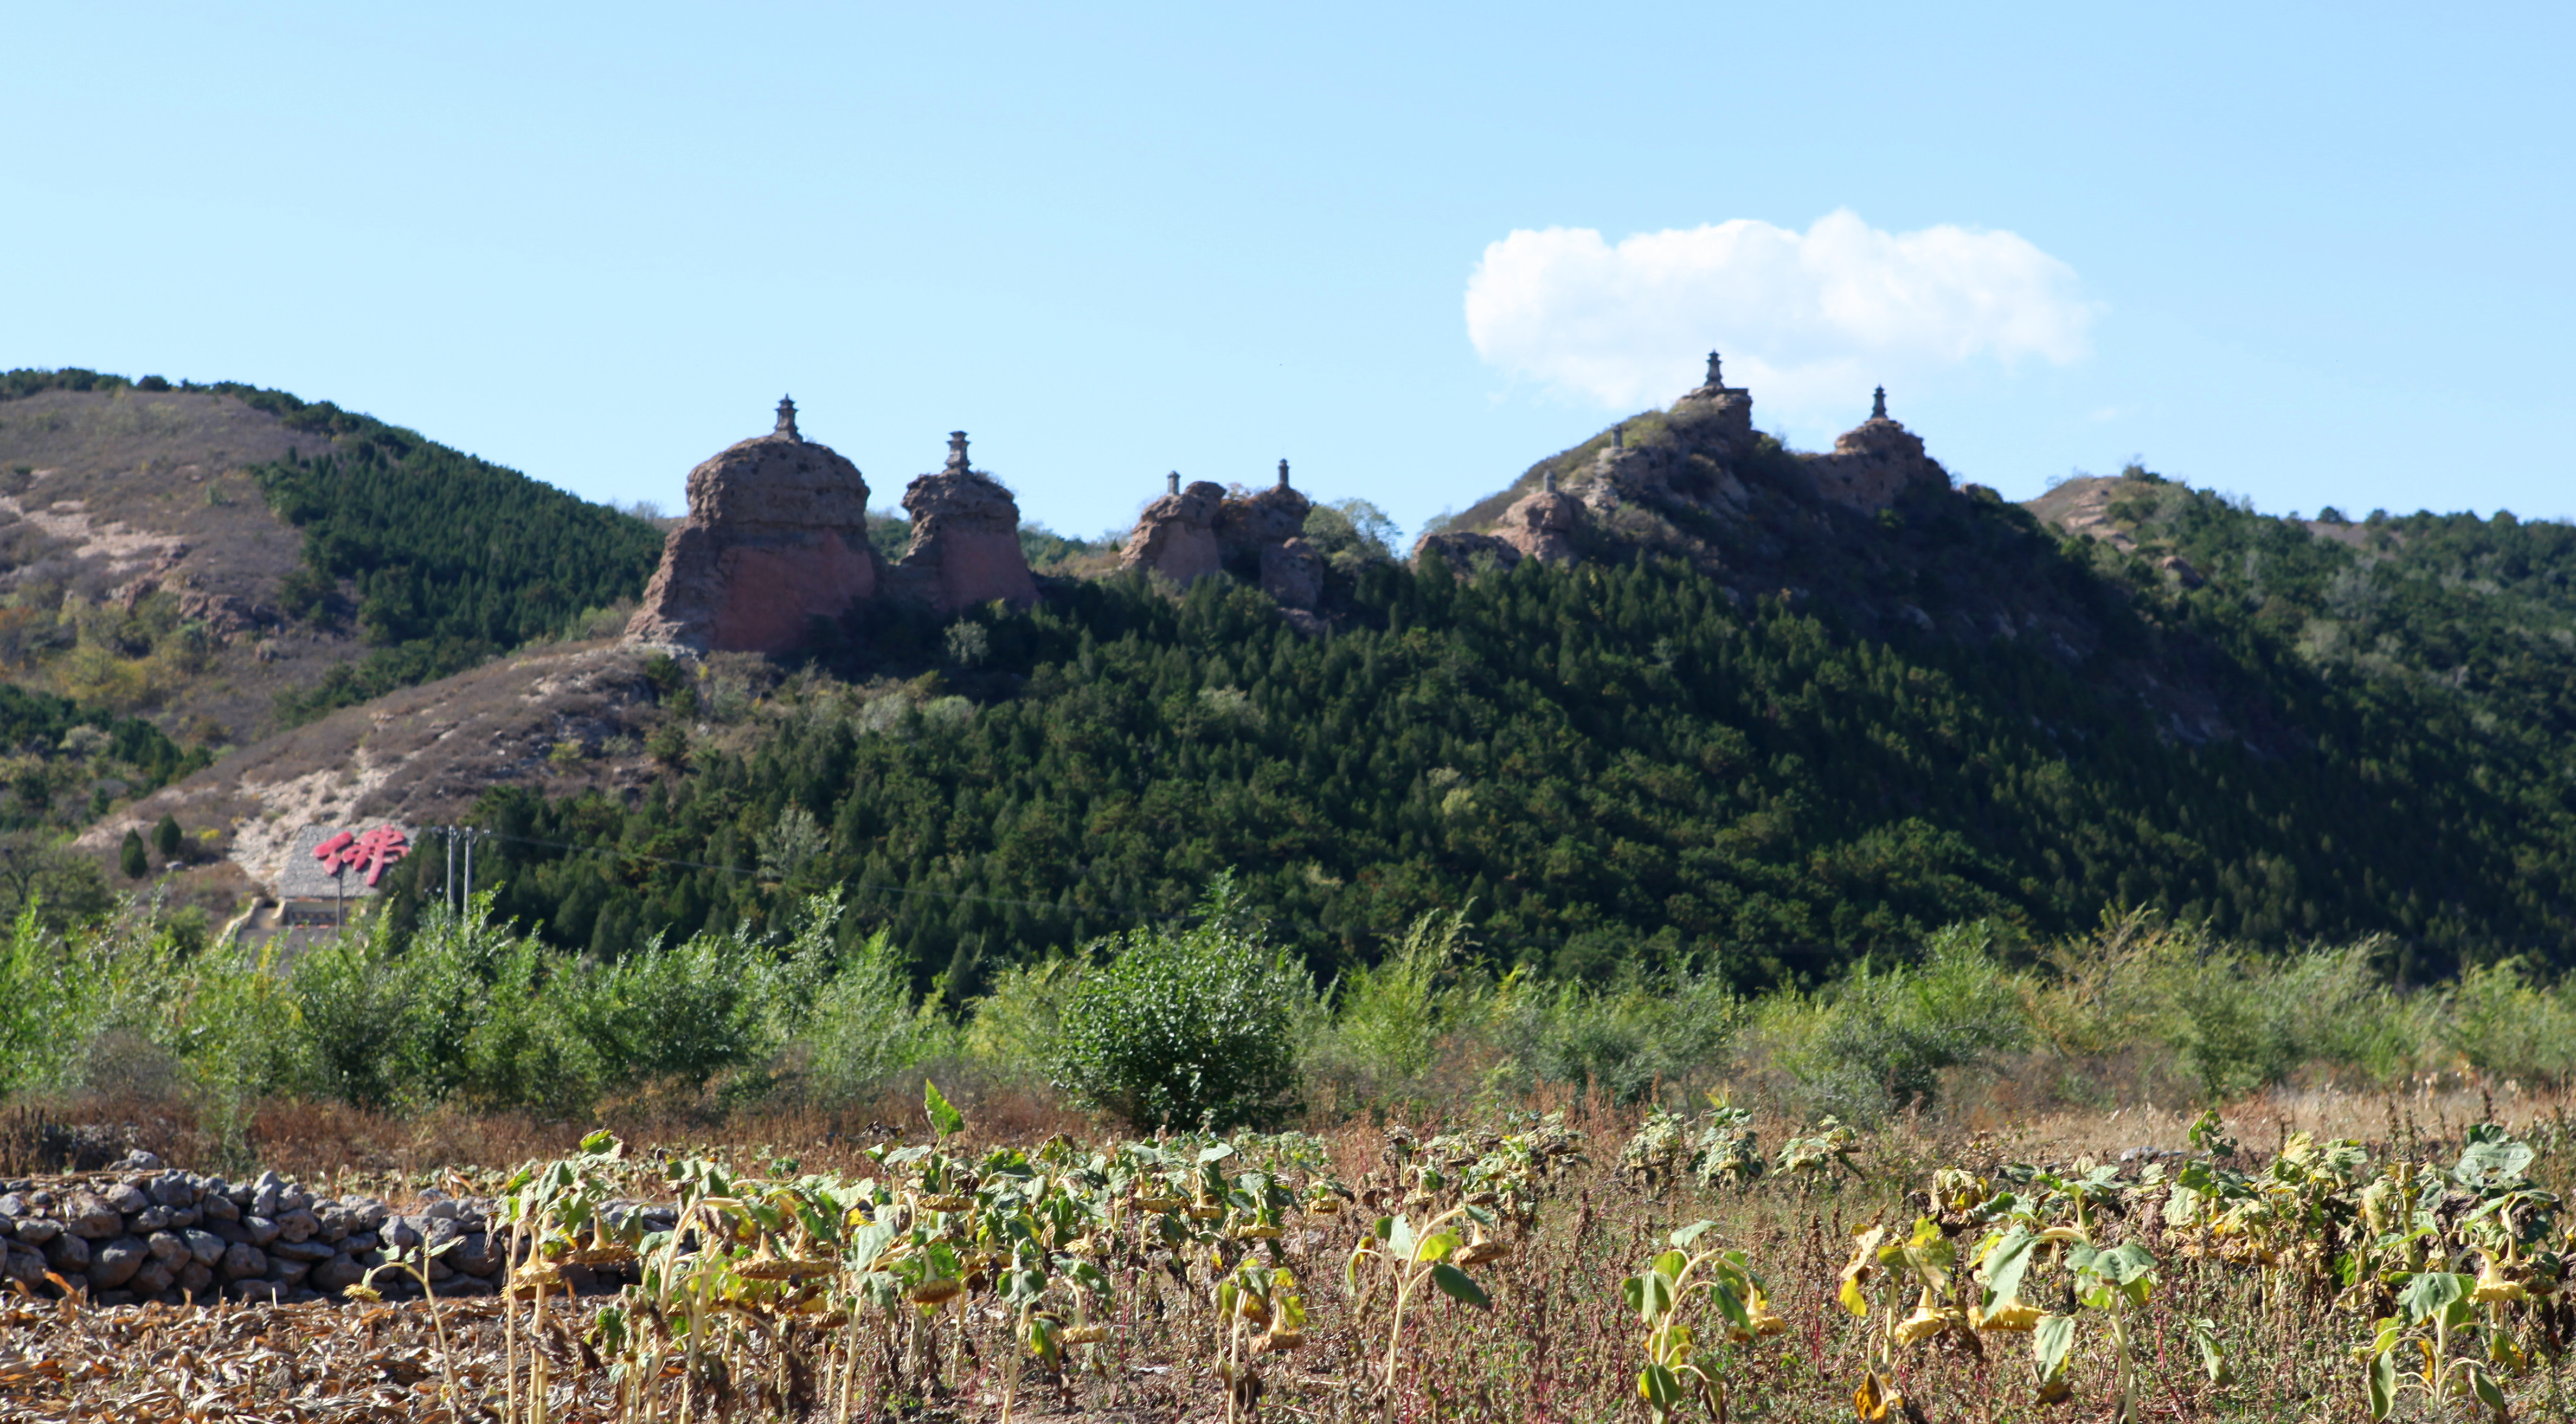 辽宁锦州义县之八塔山,一个纪念佛祖功德的神秘塔林,值得一看!